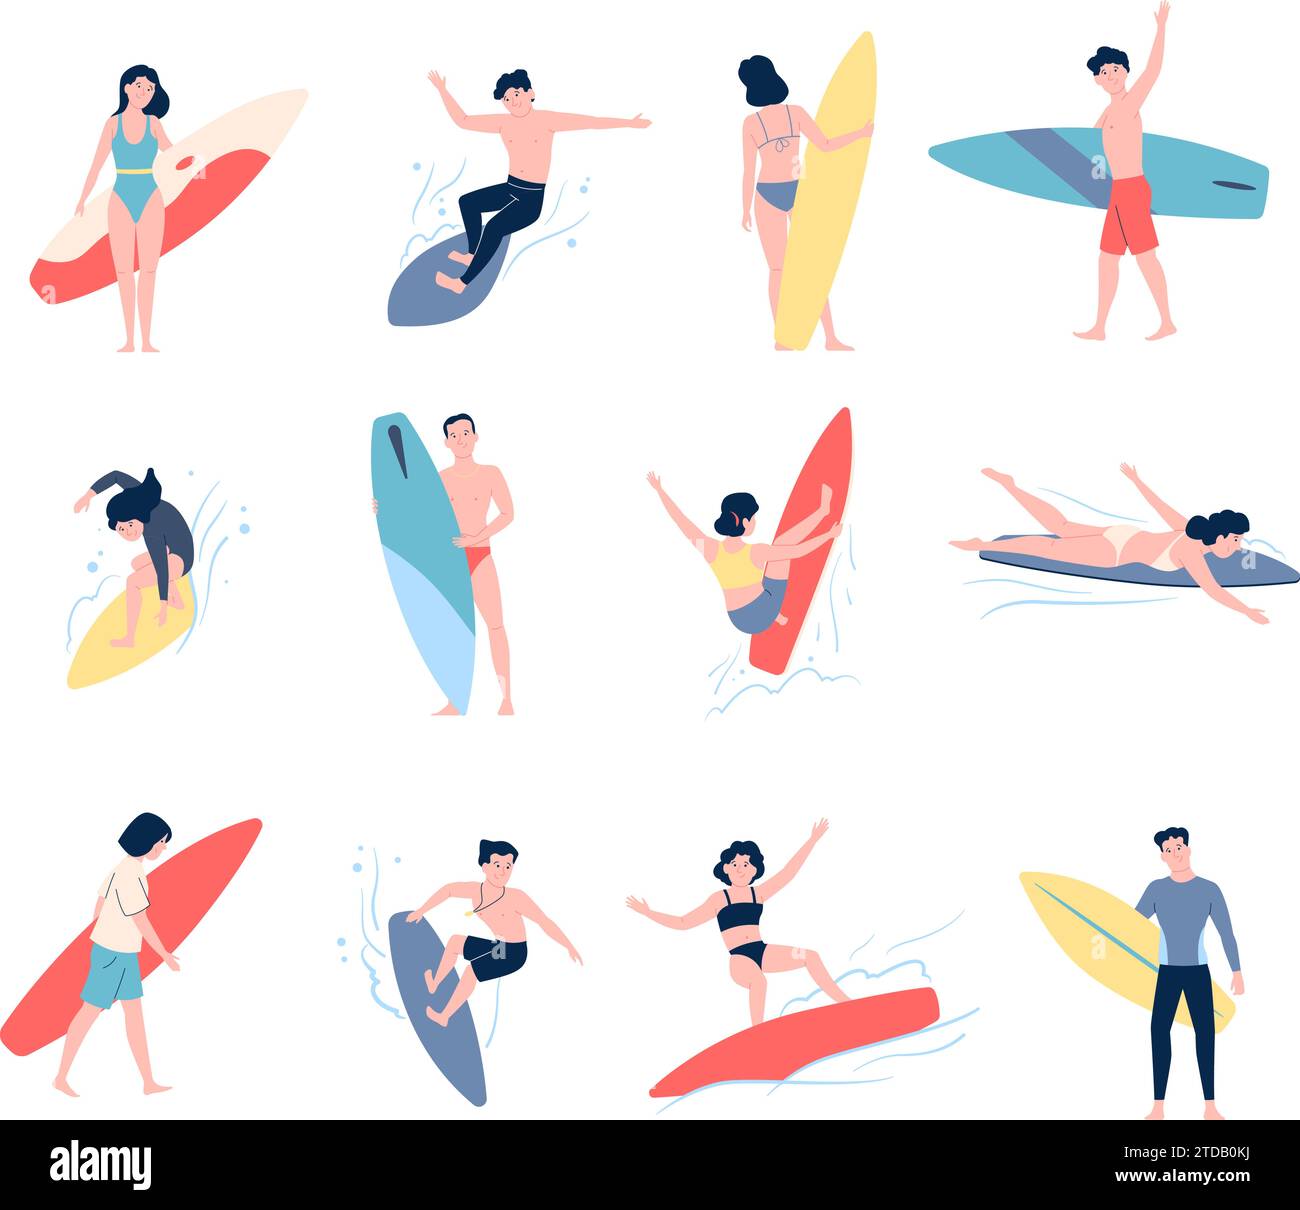 Surfers personaggi che nuotano sulle tavole. Attività estive in acqua sulla spiaggia. Riposo stagionale, allenamento professionale di surfisti, gente vettoriale piatta recente Illustrazione Vettoriale